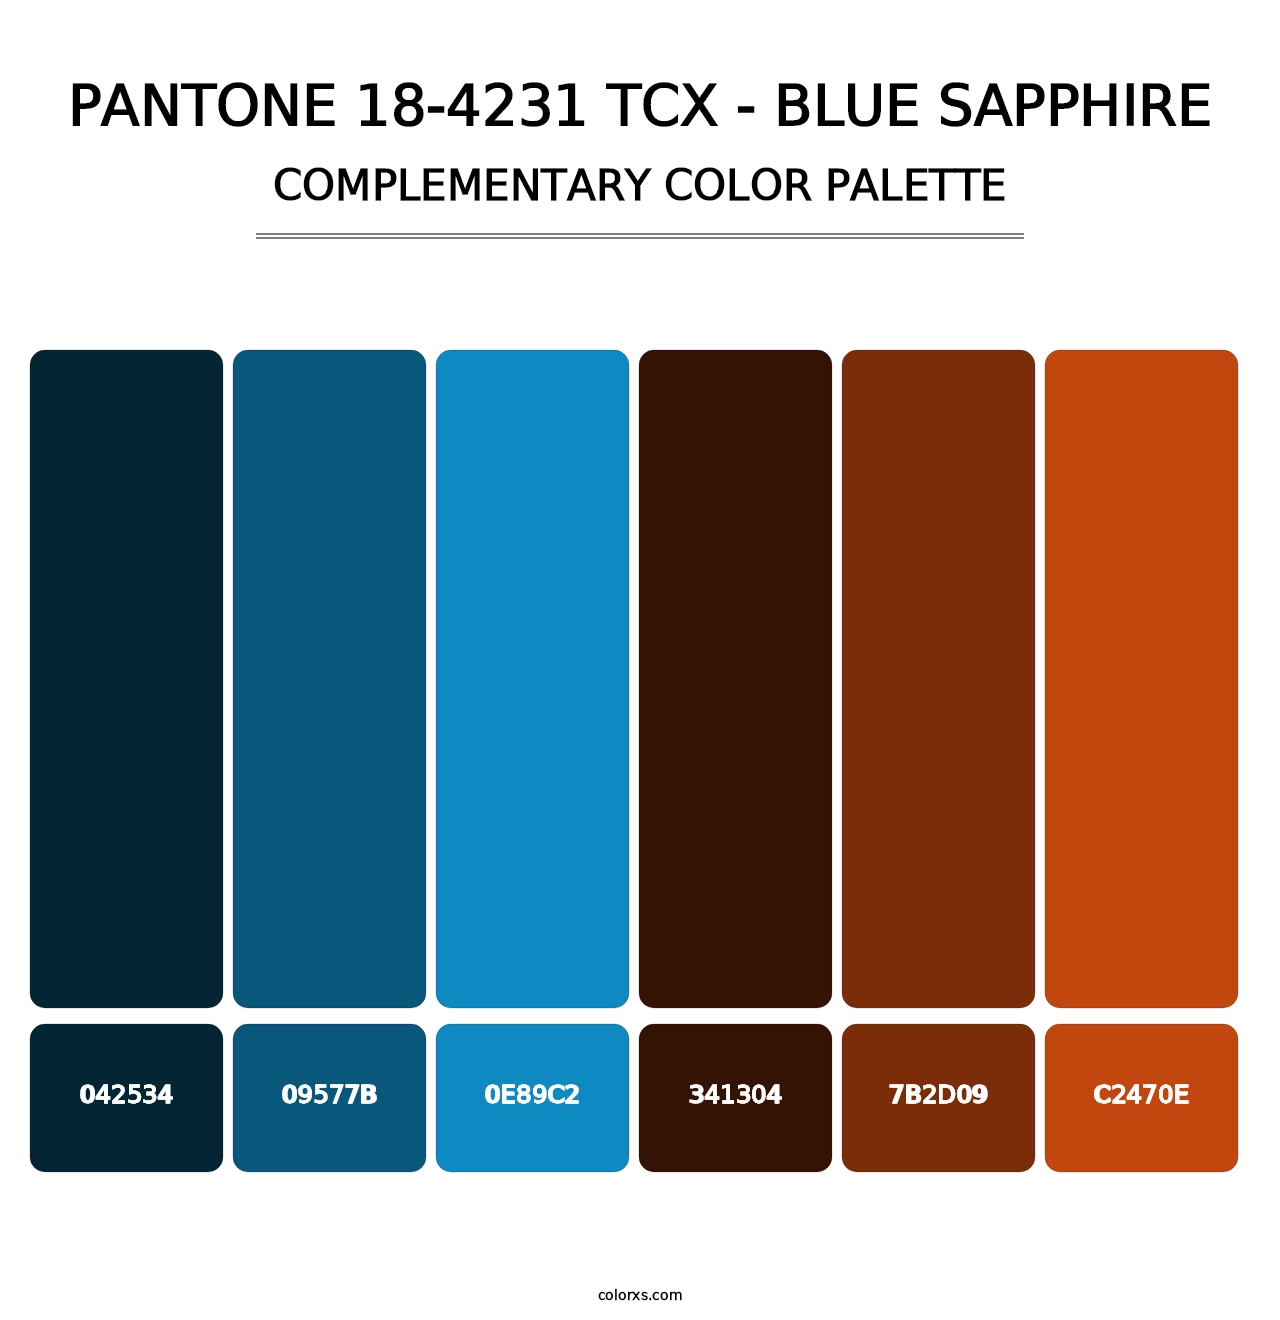 PANTONE 18-4231 TCX - Blue Sapphire - Complementary Color Palette